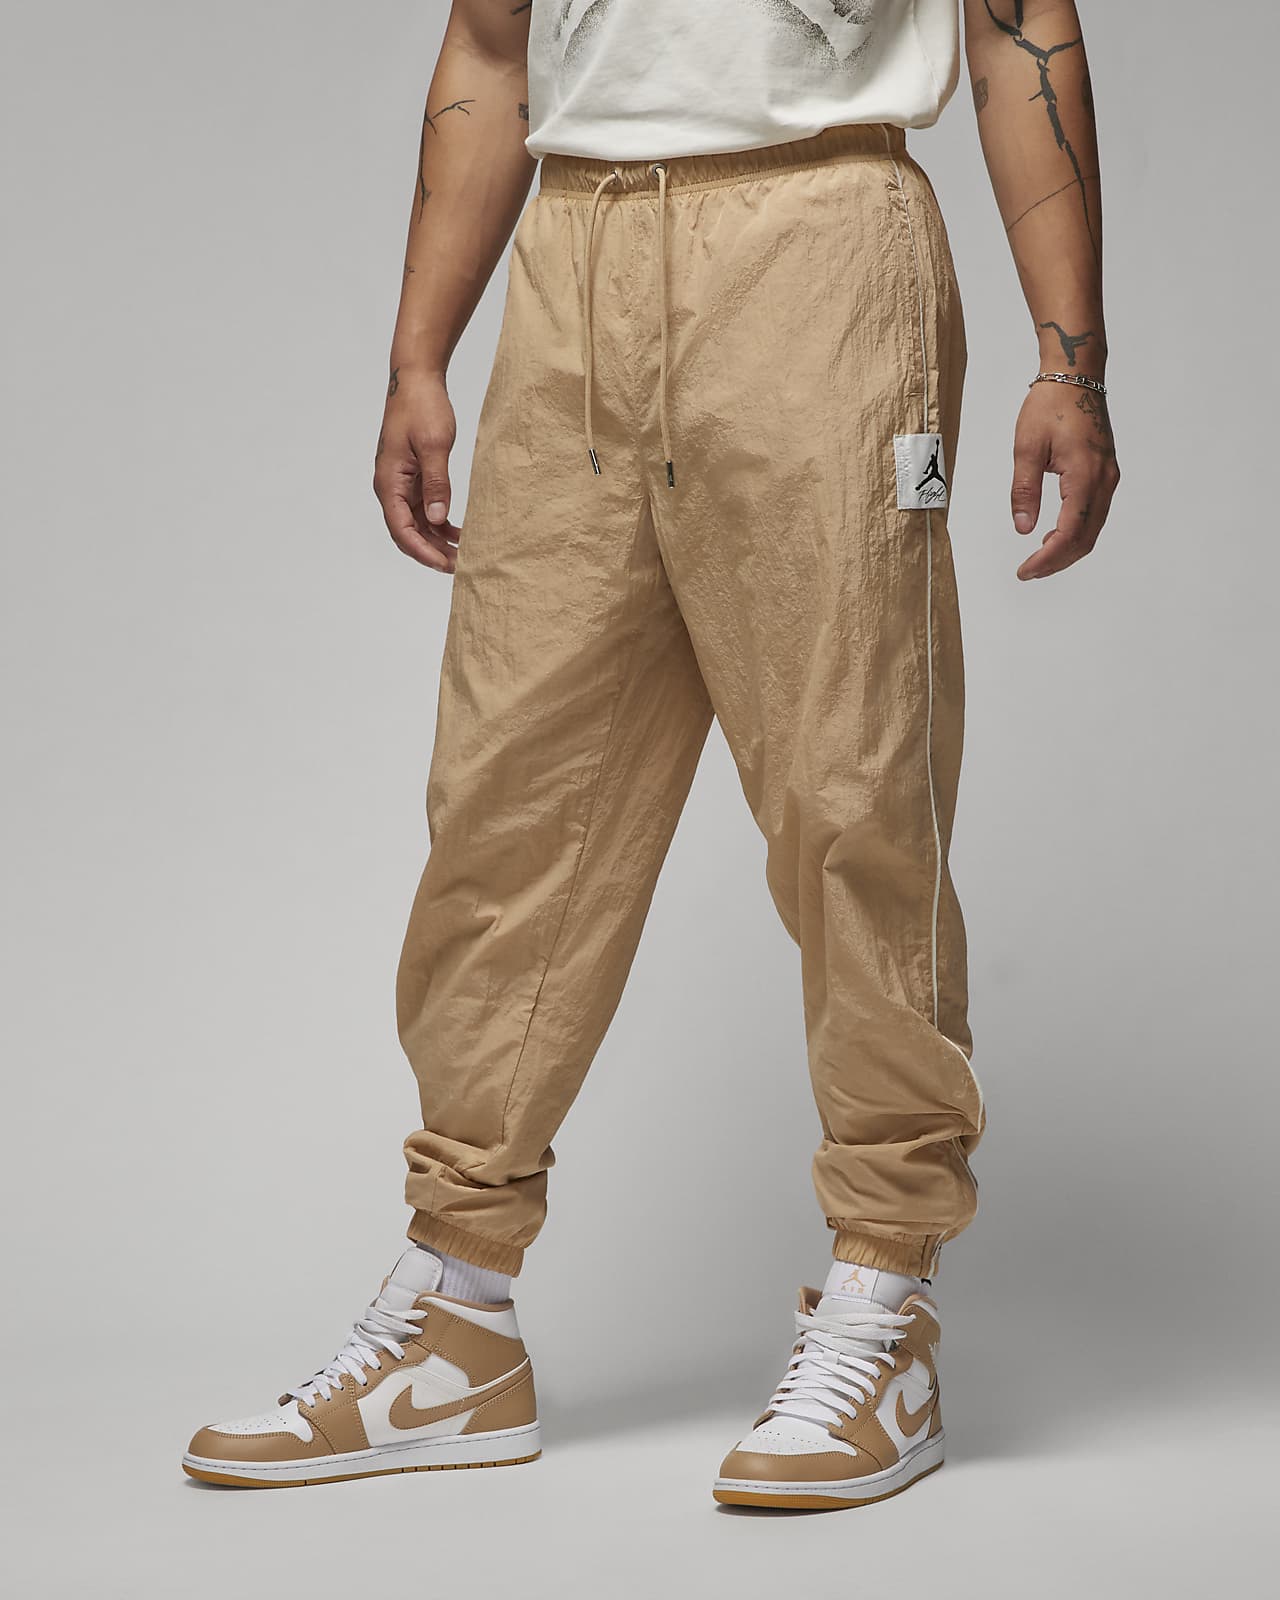 Jordan Essentials Men's Warm-Up Pants. Nike.com